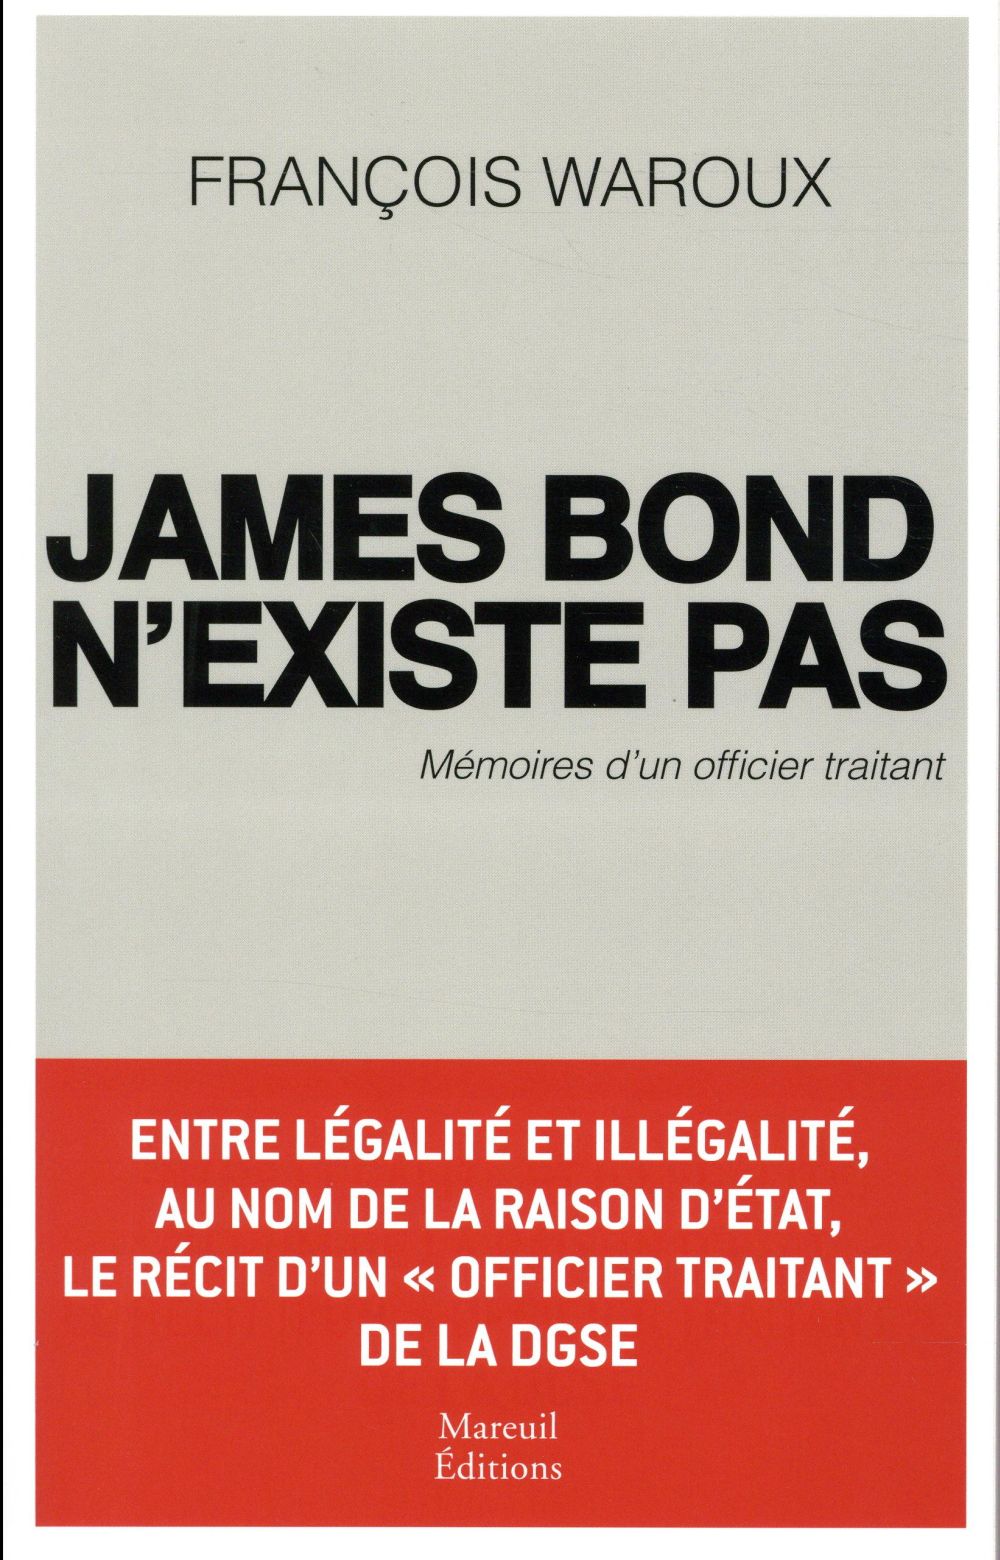 JAMES BOND N'EXISTE PAS - MEMOIRES D'UN OFFICIER TRAITANT